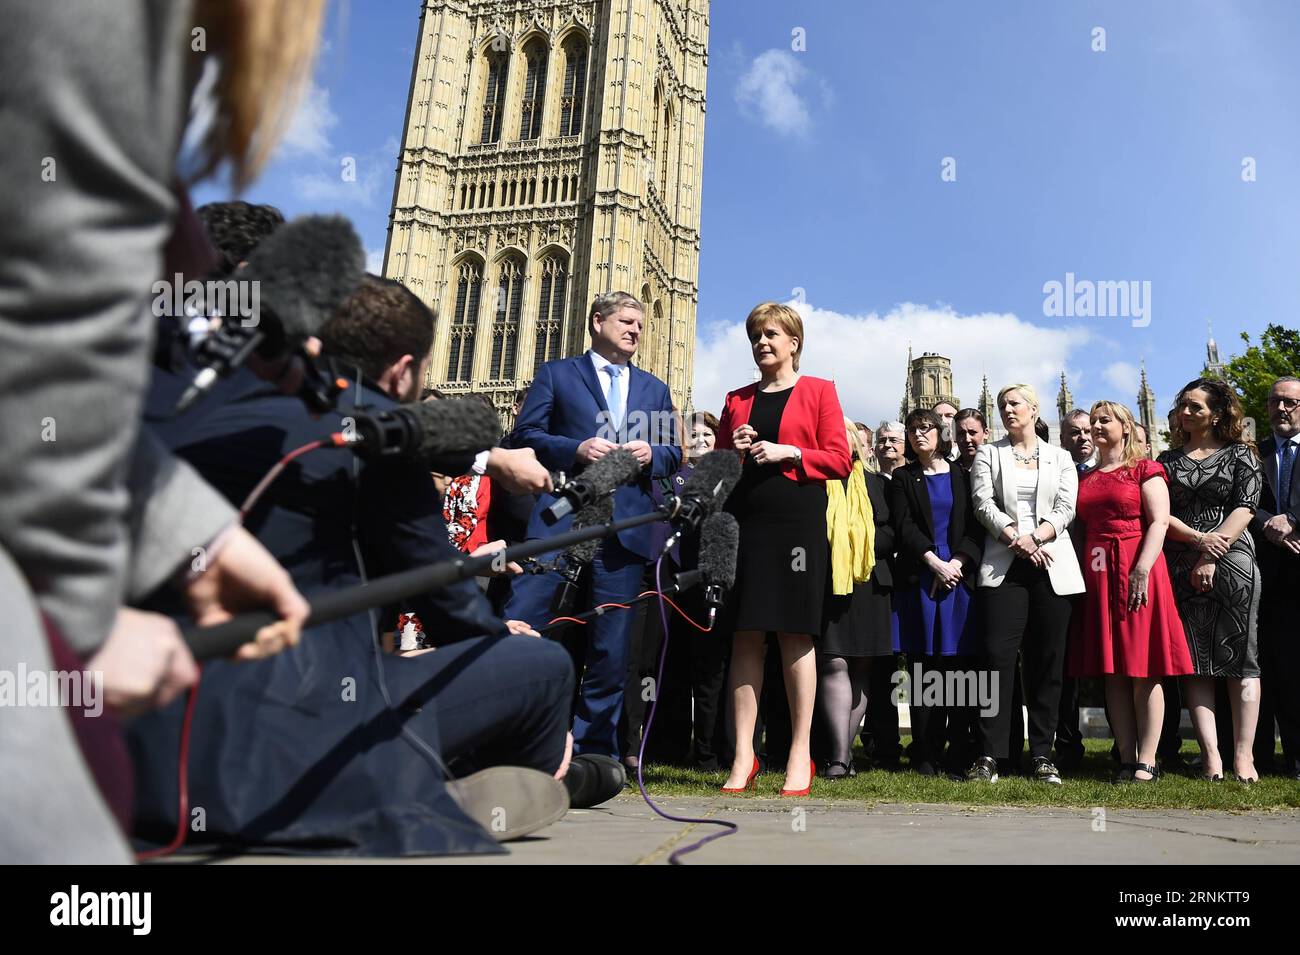 (170420) -- LONDRES, le 20 avril 2017 -- le chef du Parti national écossais (SNP) et premier ministre écossais Nicola Sturgeon (R, avant) s'entretient devant les chambres du Parlement avec le chef adjoint du SNP, Angus Robertson, à Londres, en Grande-Bretagne, le 19 avril 2017. Les députés de la Chambre des communes britannique ont donné leur soutien mercredi à l'appel de la première ministre Theresa May pour la tenue d'élections générales anticipées le 8 juin. GRANDE-BRETAGNE-LONDRES-ÉLECTION TimxIreland PUBLICATIONxNOTxINxCHN Londres avril 20 2017 le chef du Parti national écossais SNP et les premiers ministres écossais Nicola Sturgeon r Front prennent la parole devant le Ho Banque D'Images